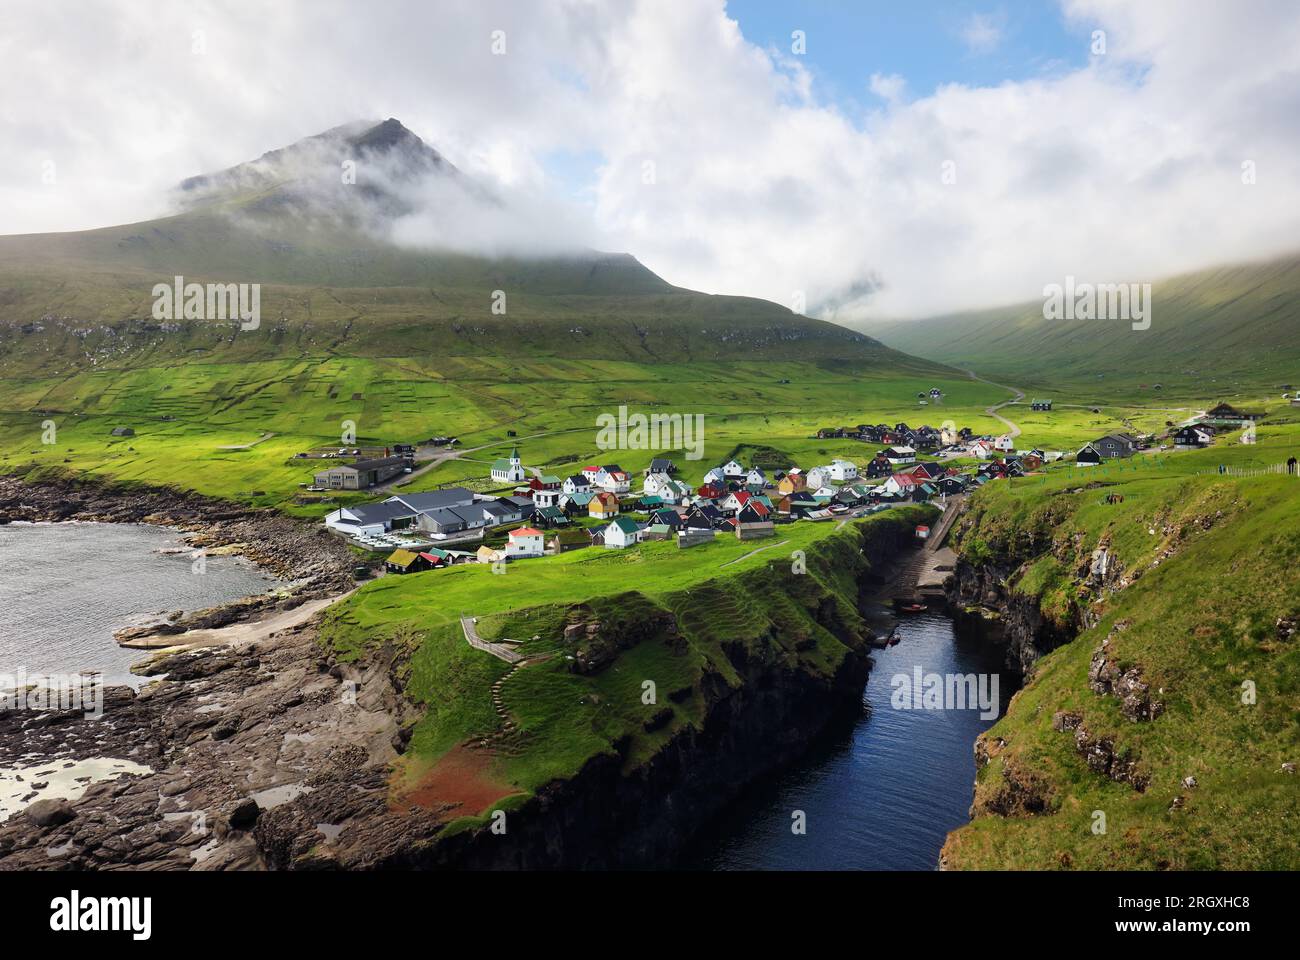 Dorf Gjogv auf den Färöern mit bunten Häusern. Berglandschaft mit Meeresküste Stockfoto